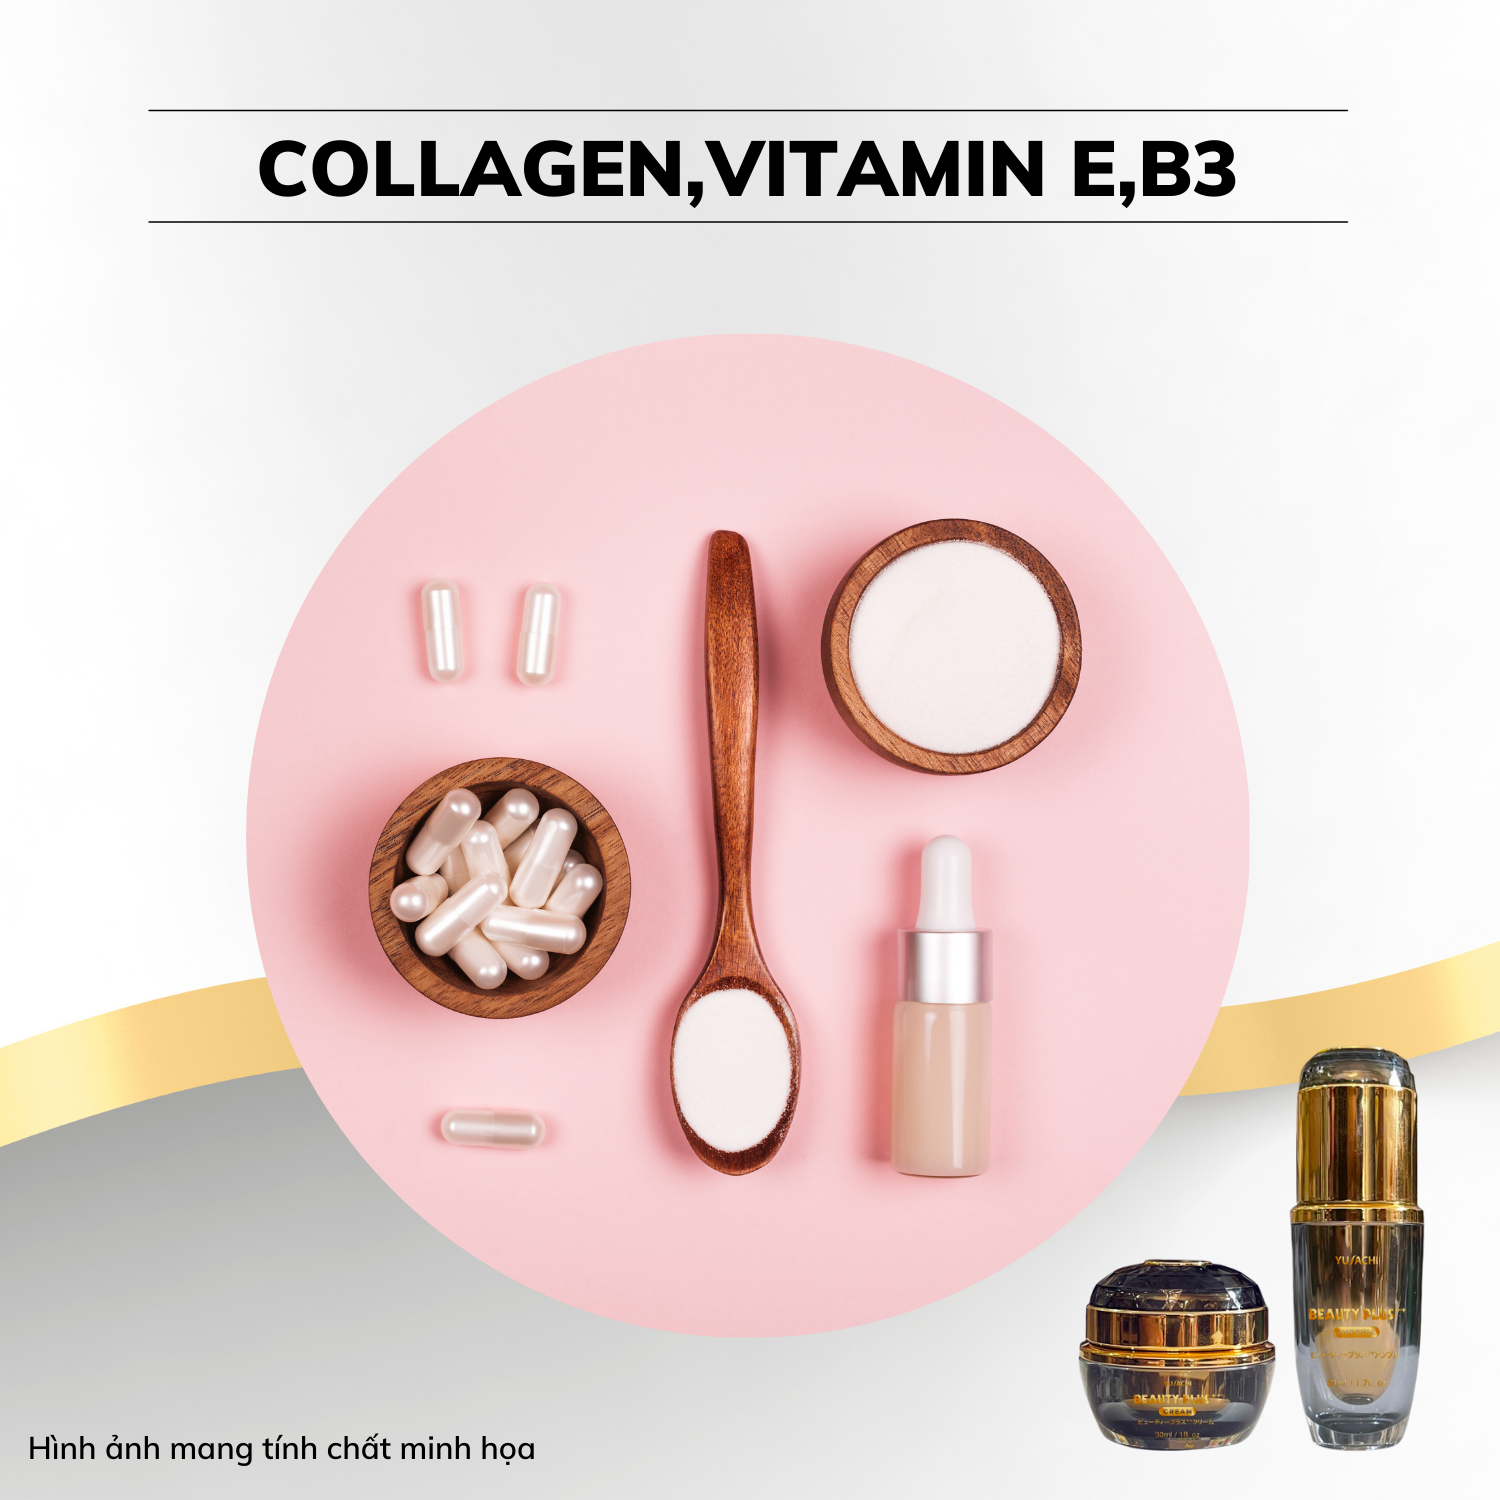 Collagen, vitamin E, vitamin B3